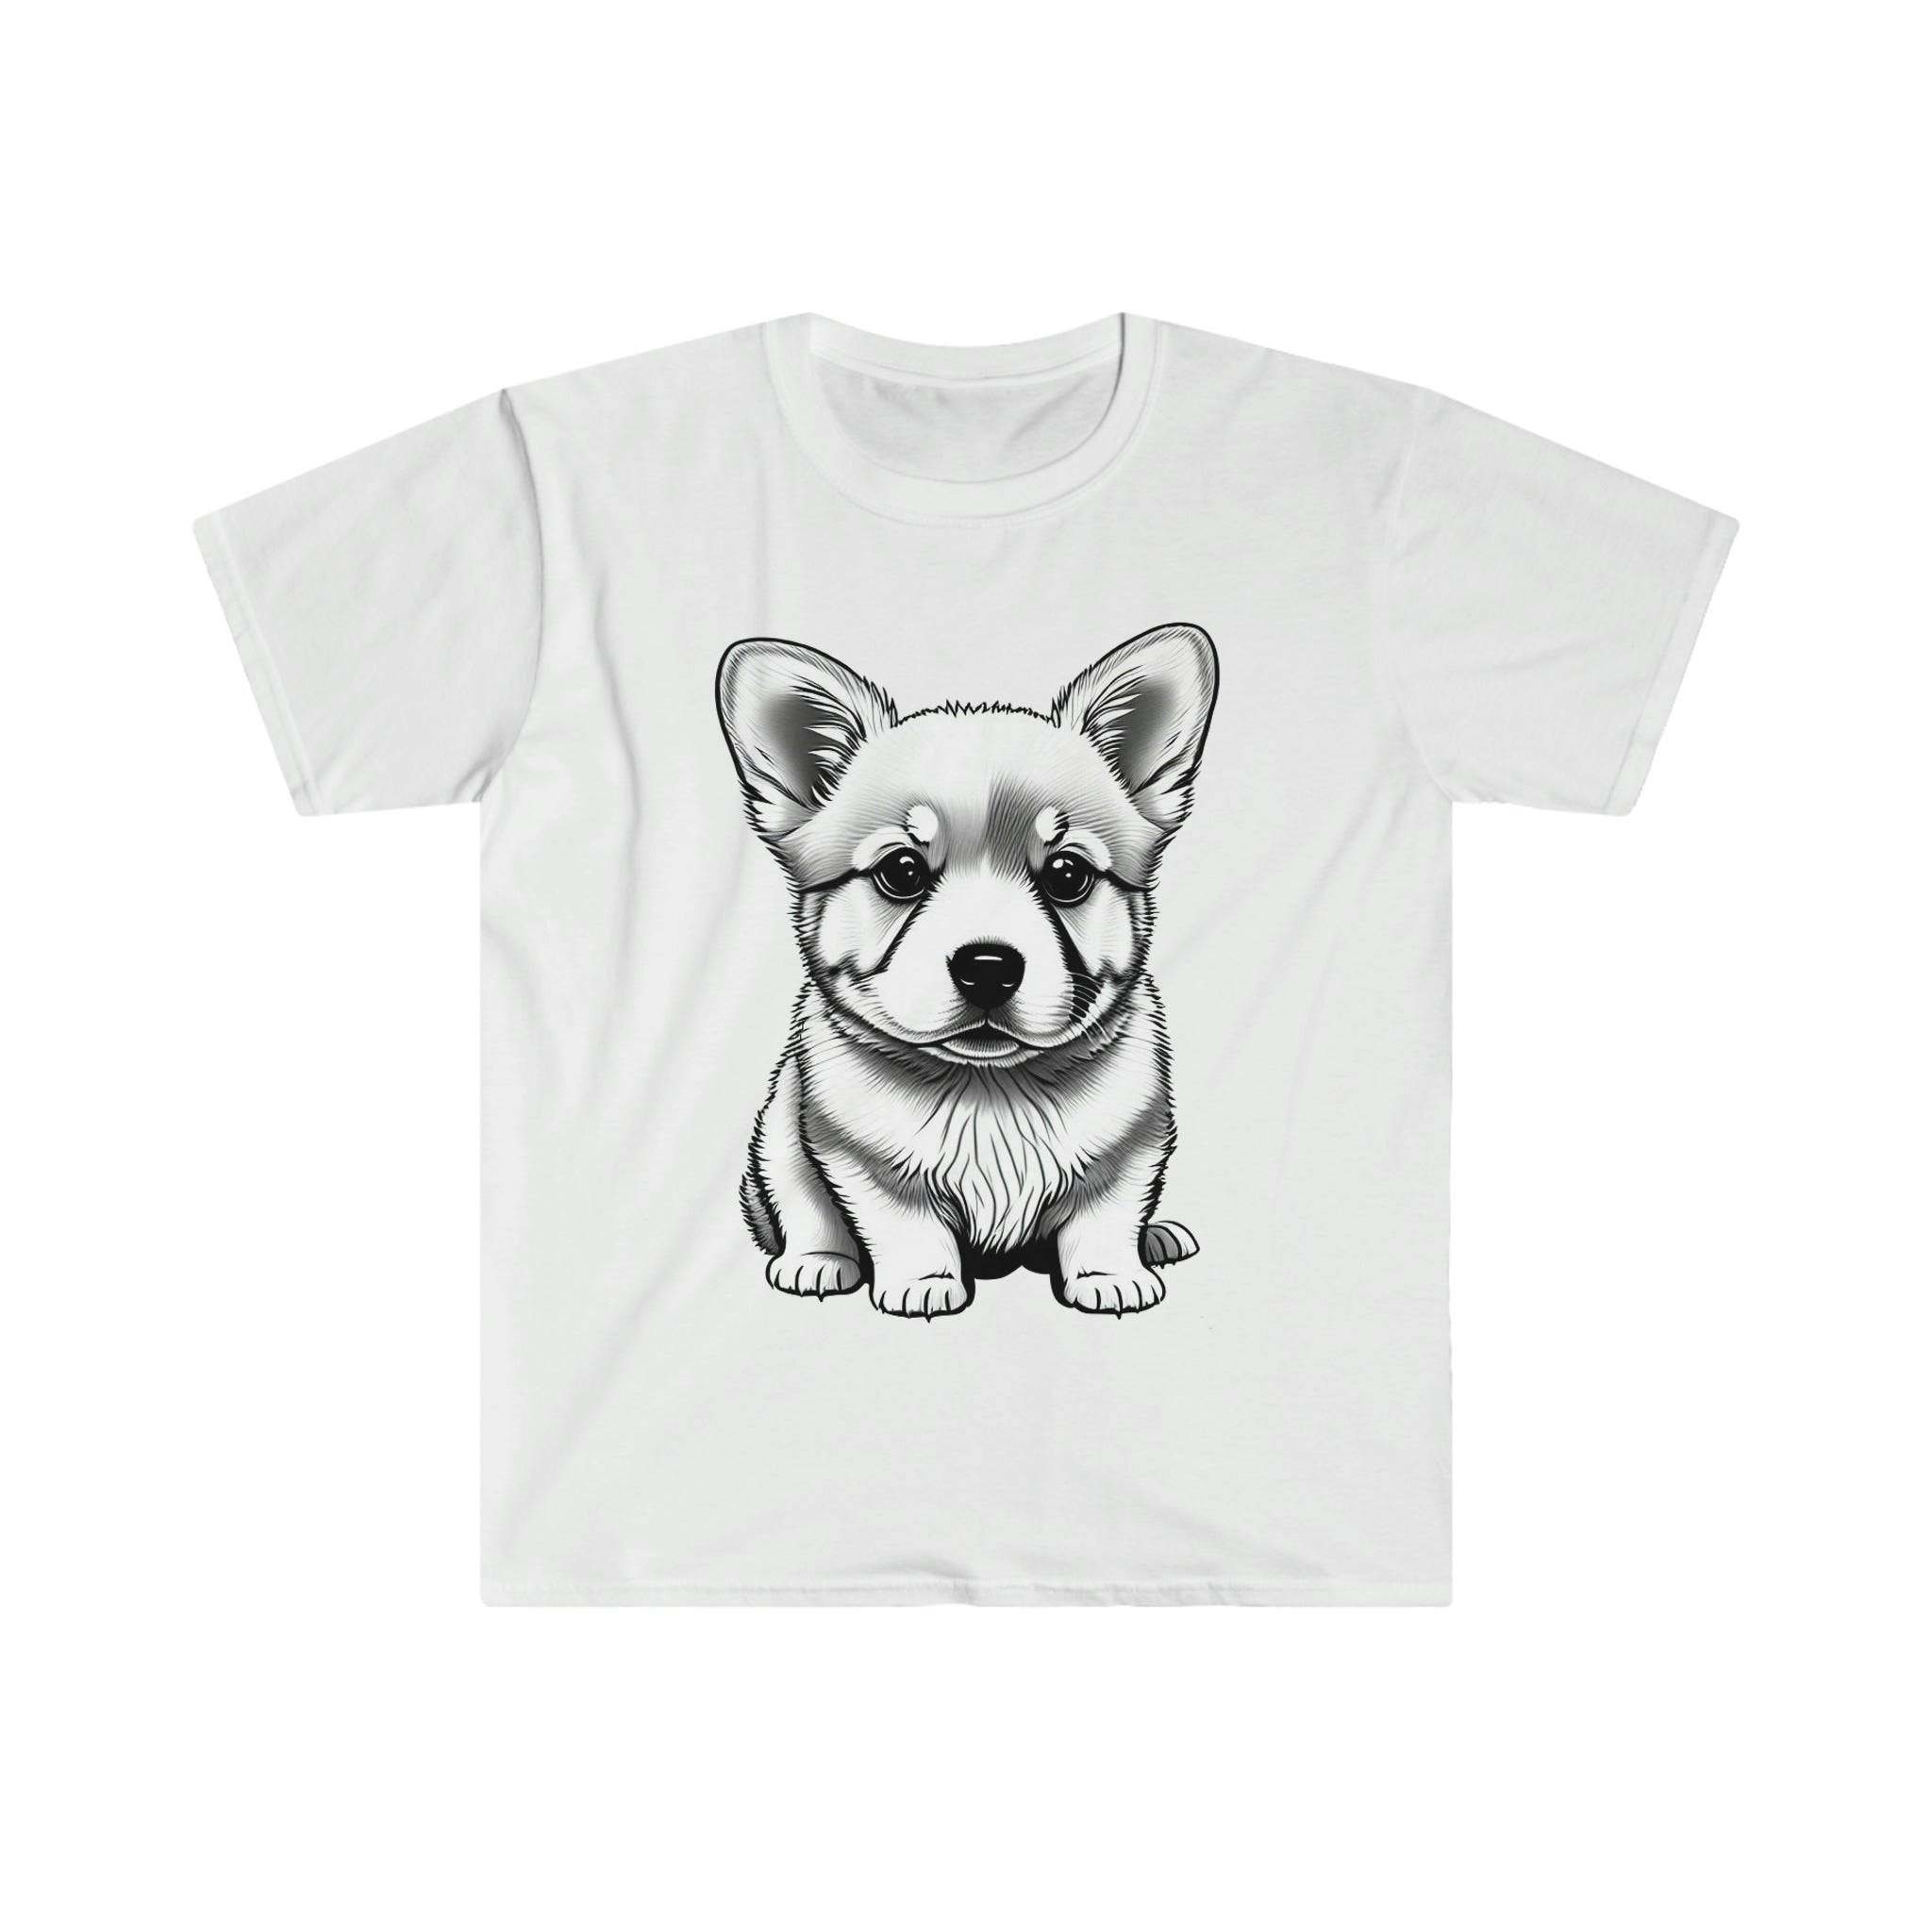 Corgi Pup Unisex Softstyle T-Shirt